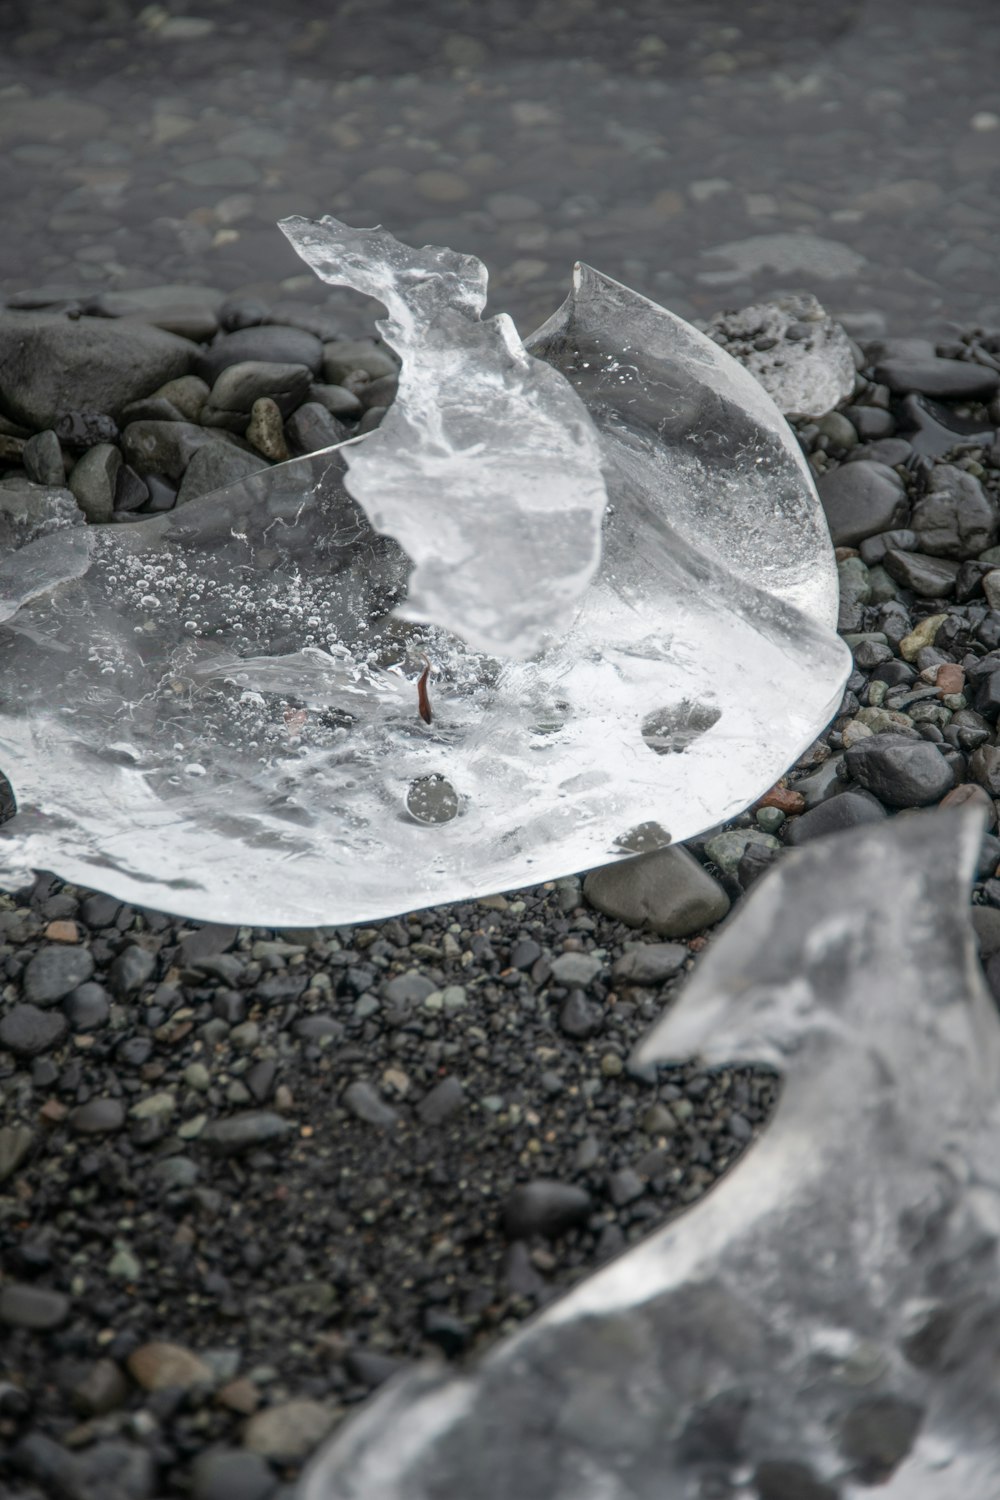 a broken ice skate on a rocky surface